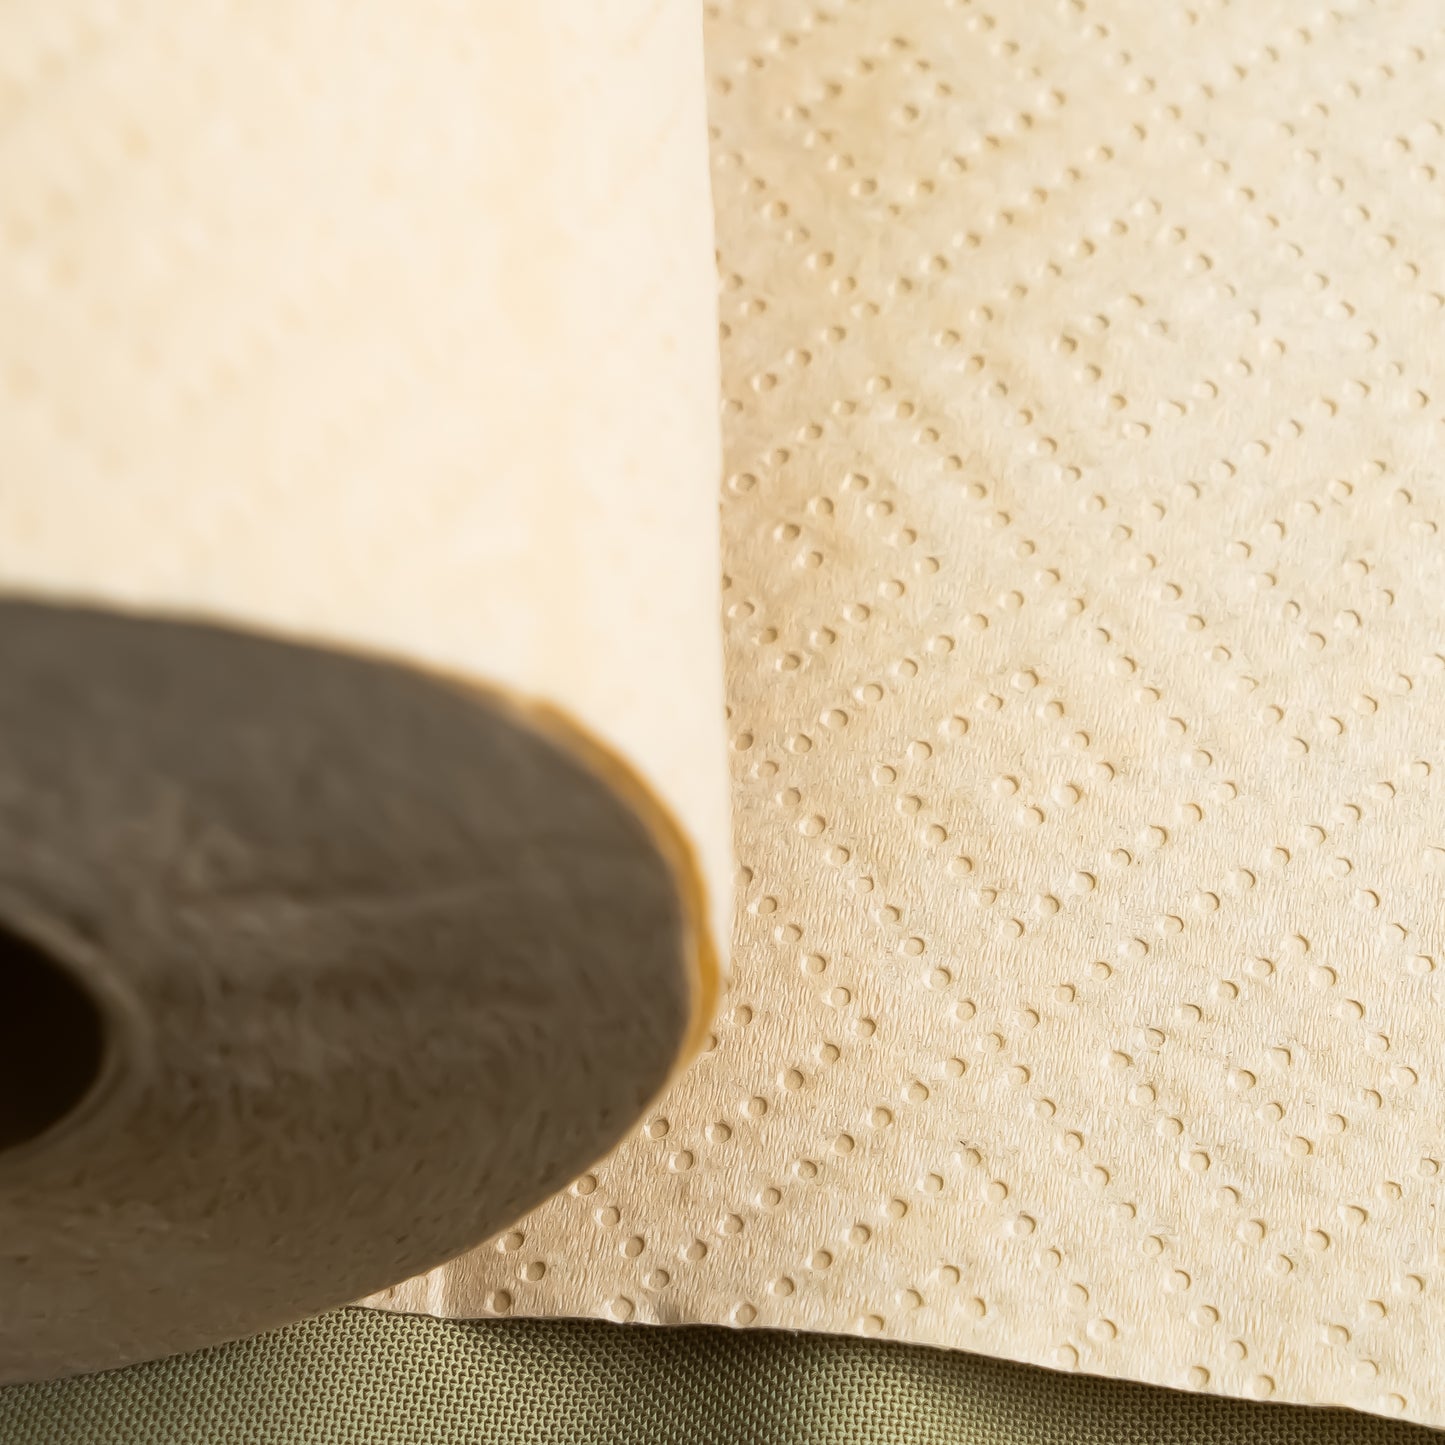 Panda Eco Paper | Bamboo Paper Towels